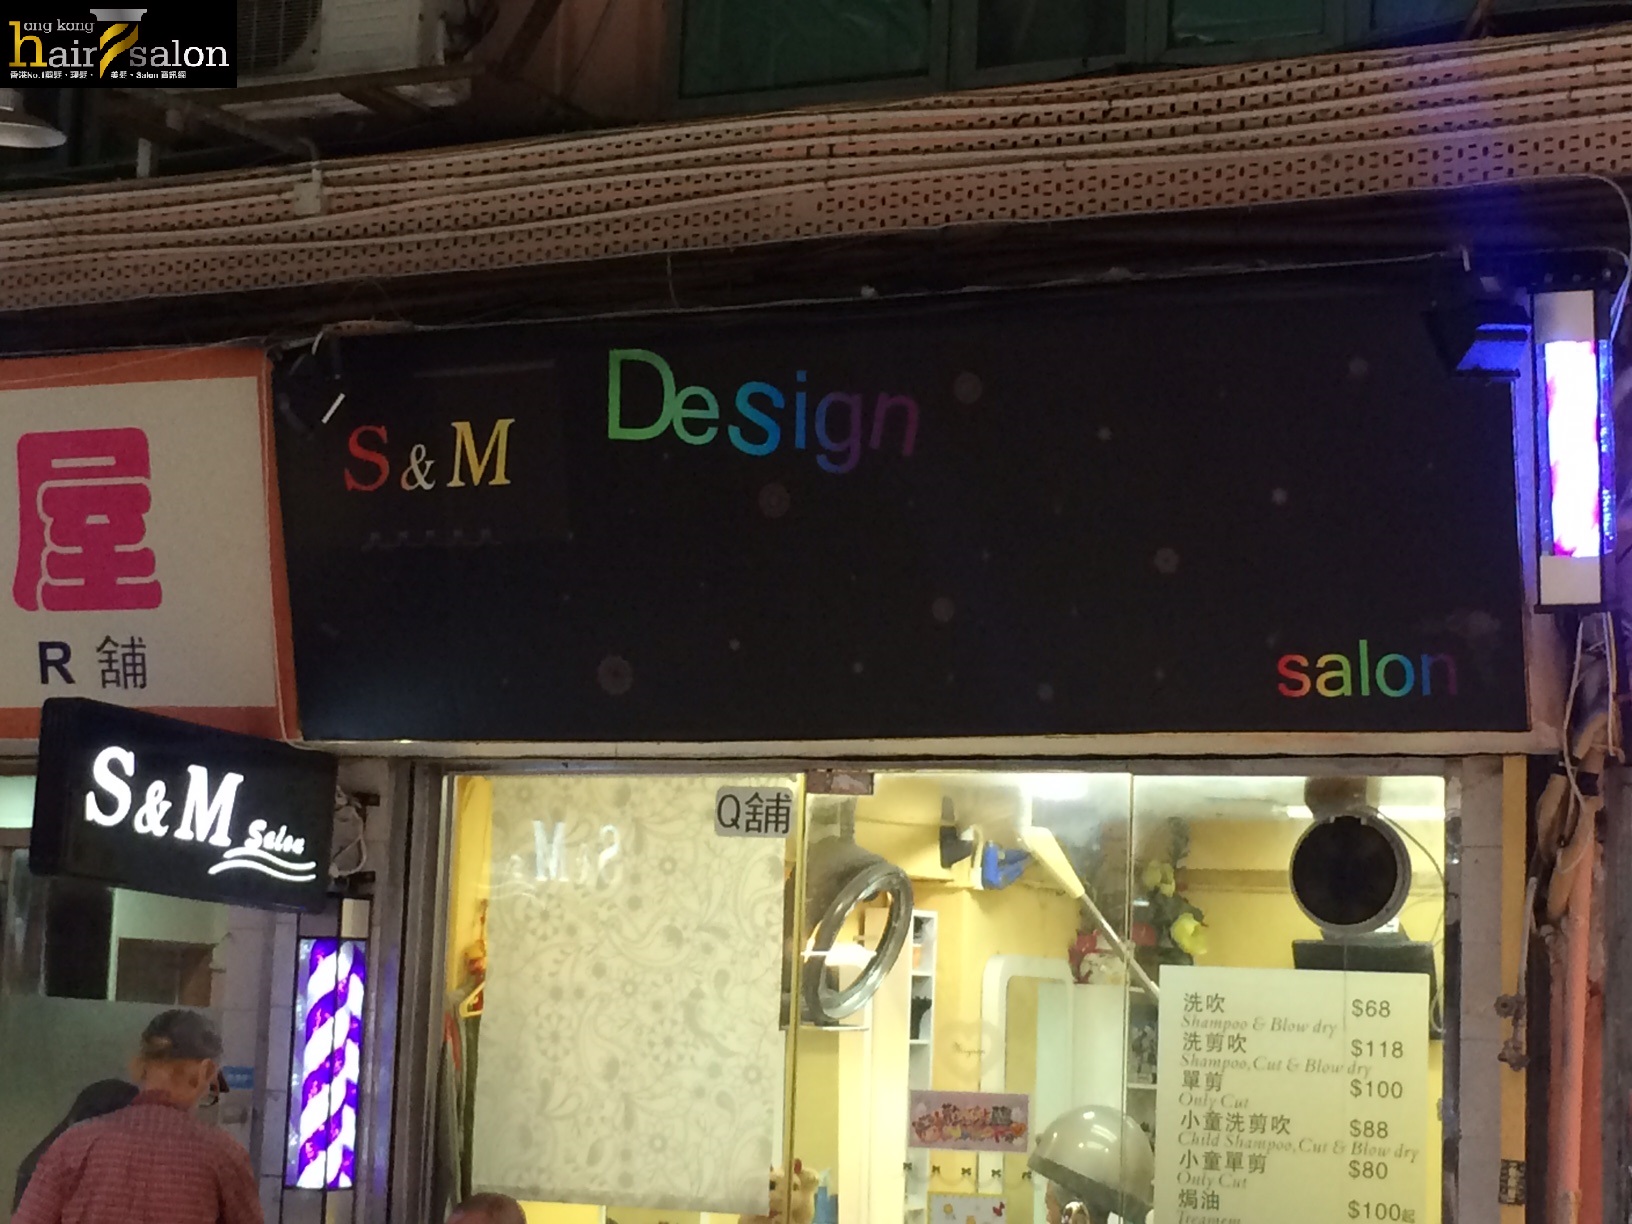 髮型屋 Salon: S&M Design Salon